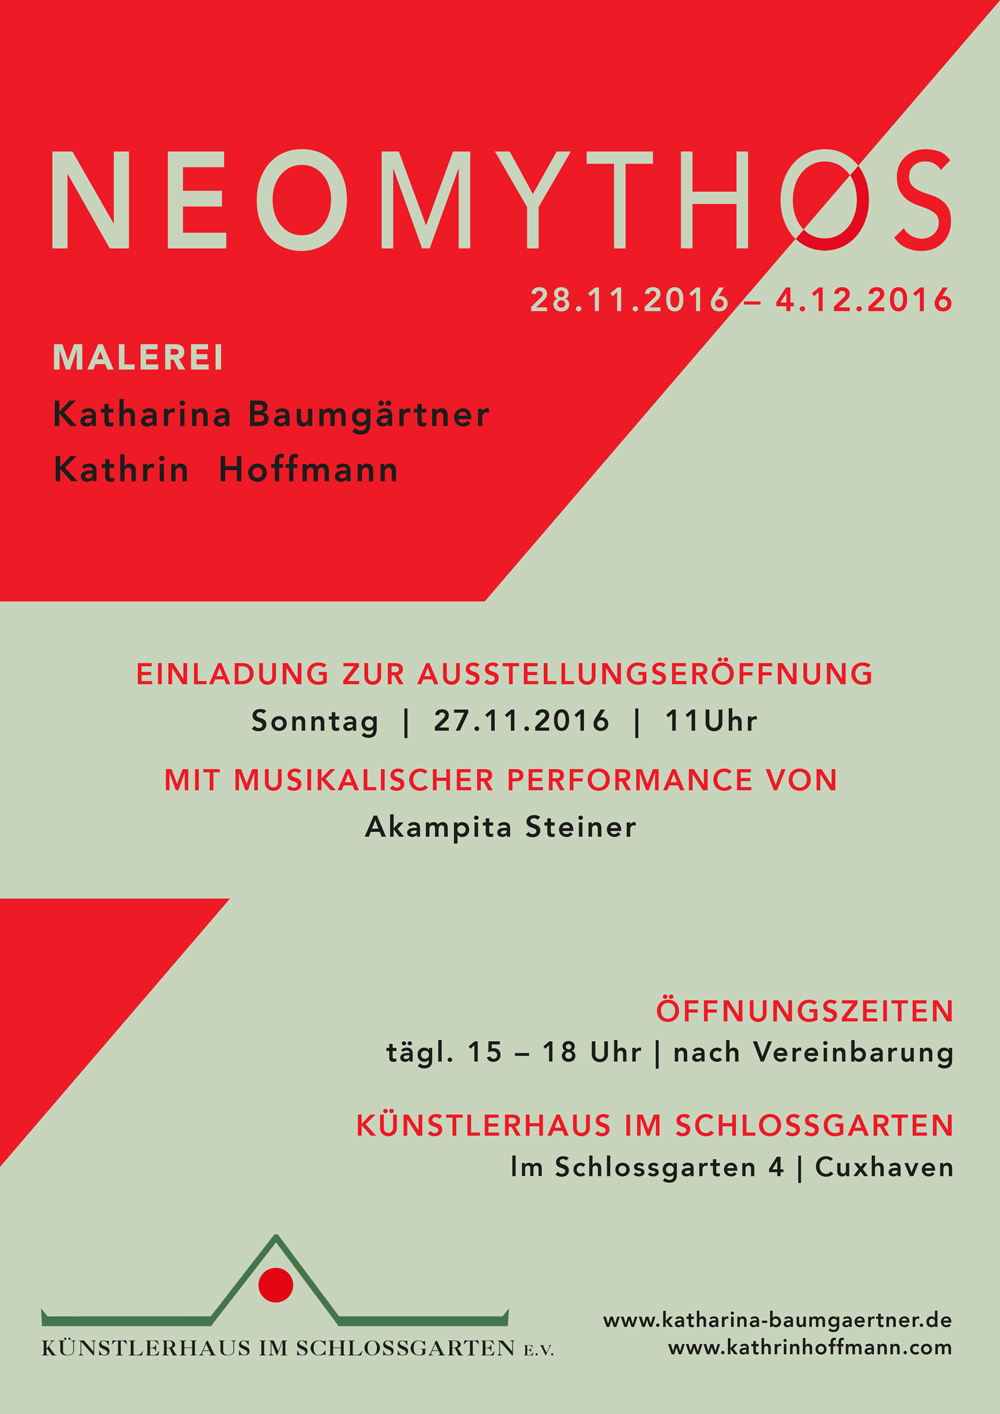 MEOMYTHOS - Katharina Baumgärtner und Kathrin Hoffmann - Ausstellung vom 28.11.-04.12.2016 - Künstlerhaus im Schlossgarten in Cuxhaven